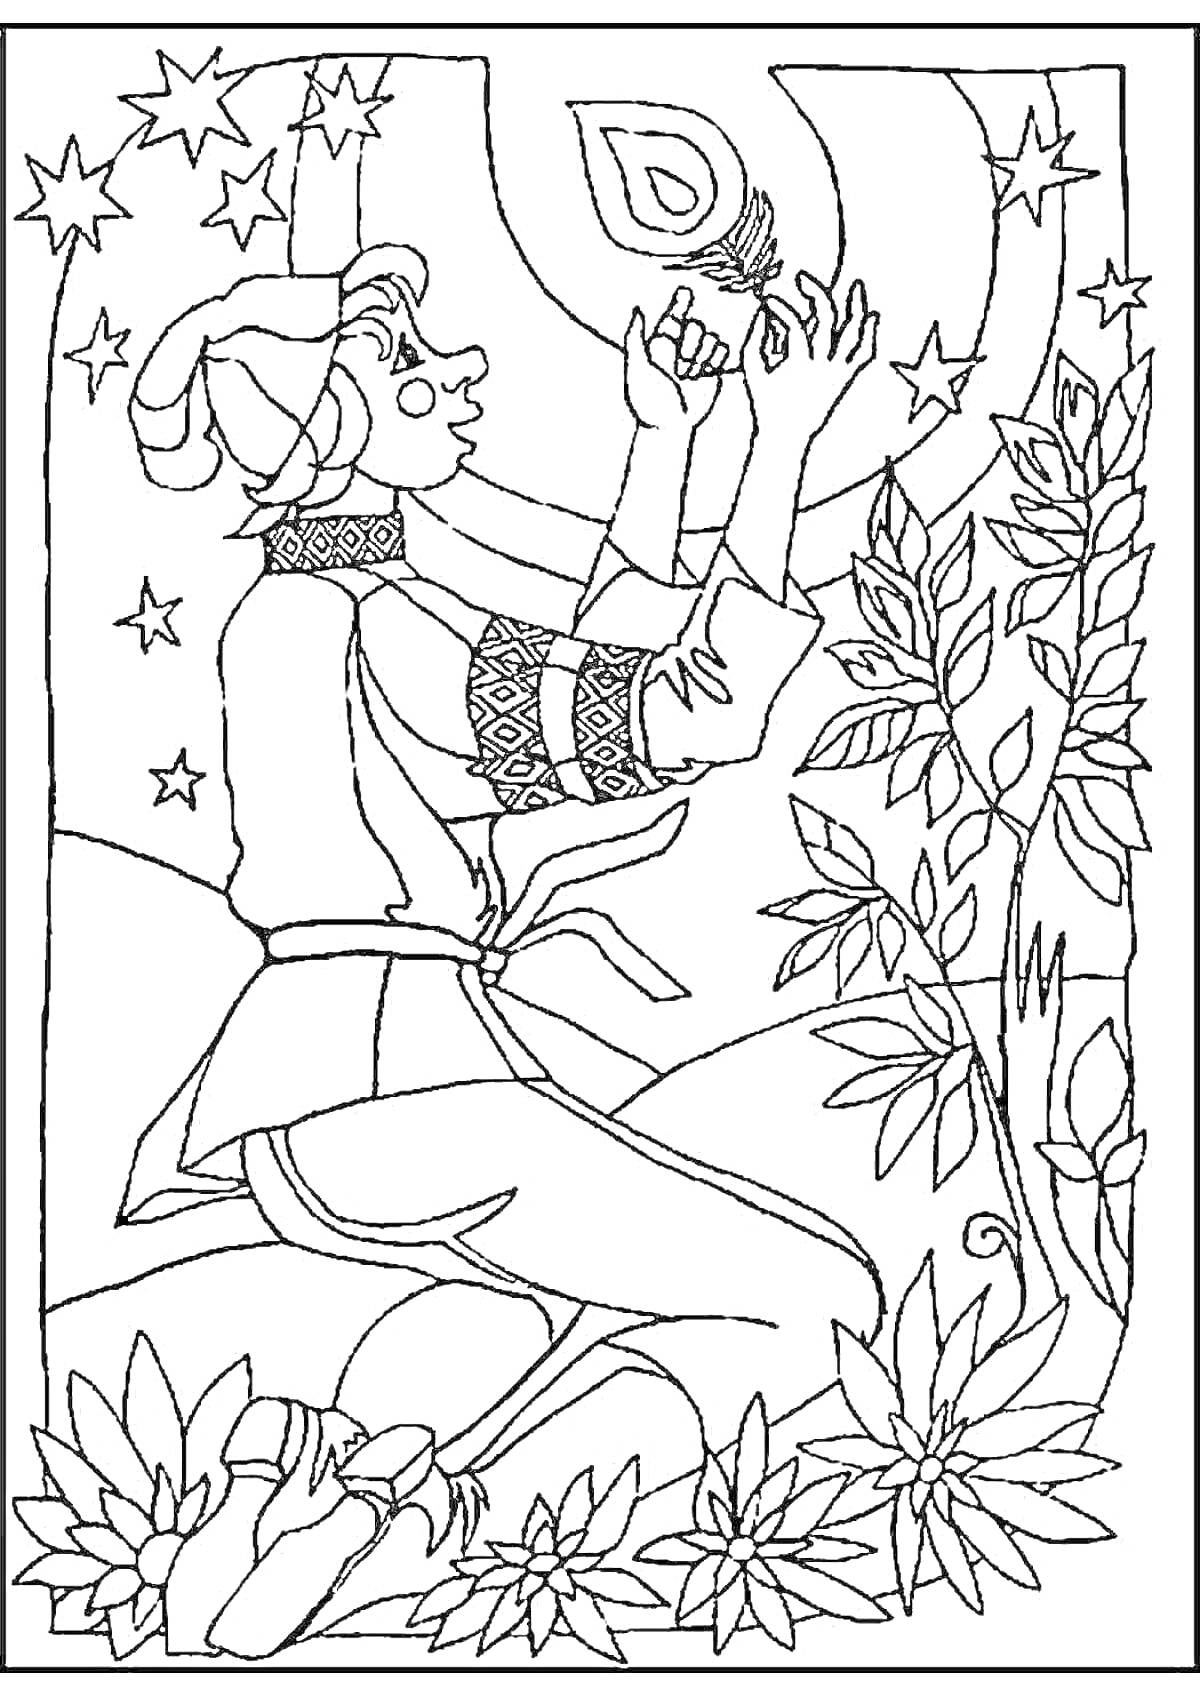 Раскраска Иван-дурак с пером Жар-птицы среди звезд и растений